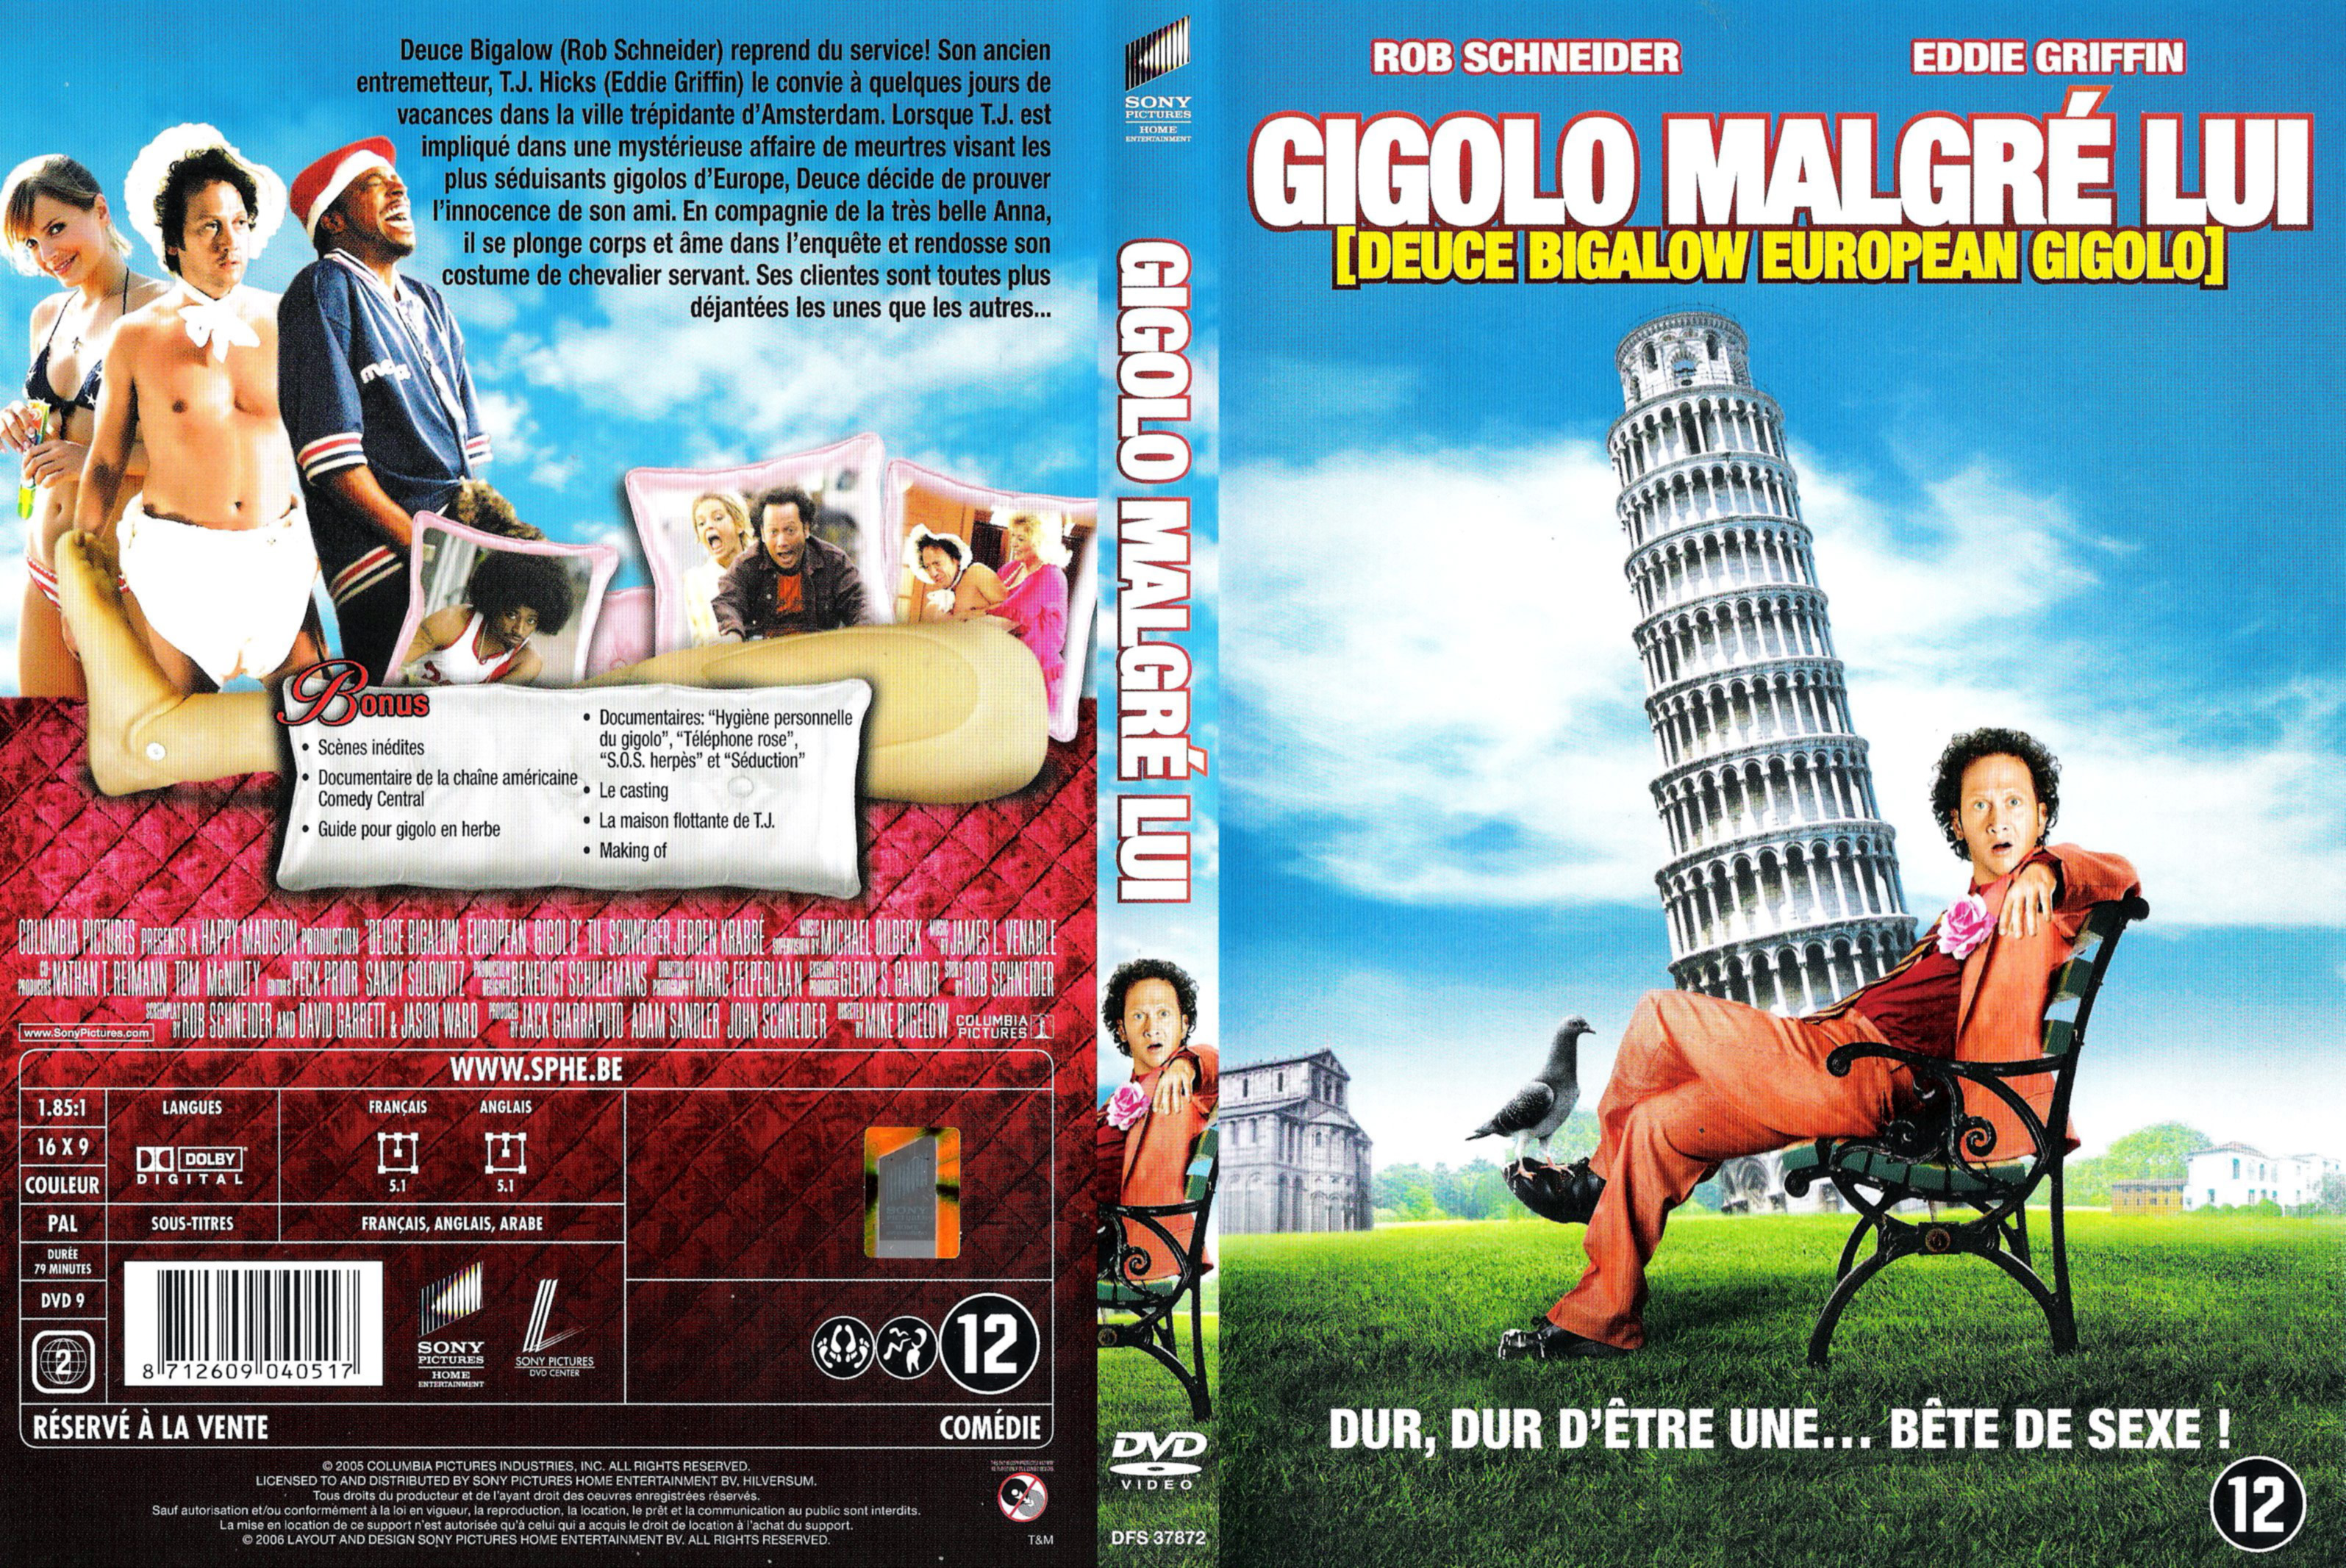 Jaquette DVD Gigolo malgr lui v3